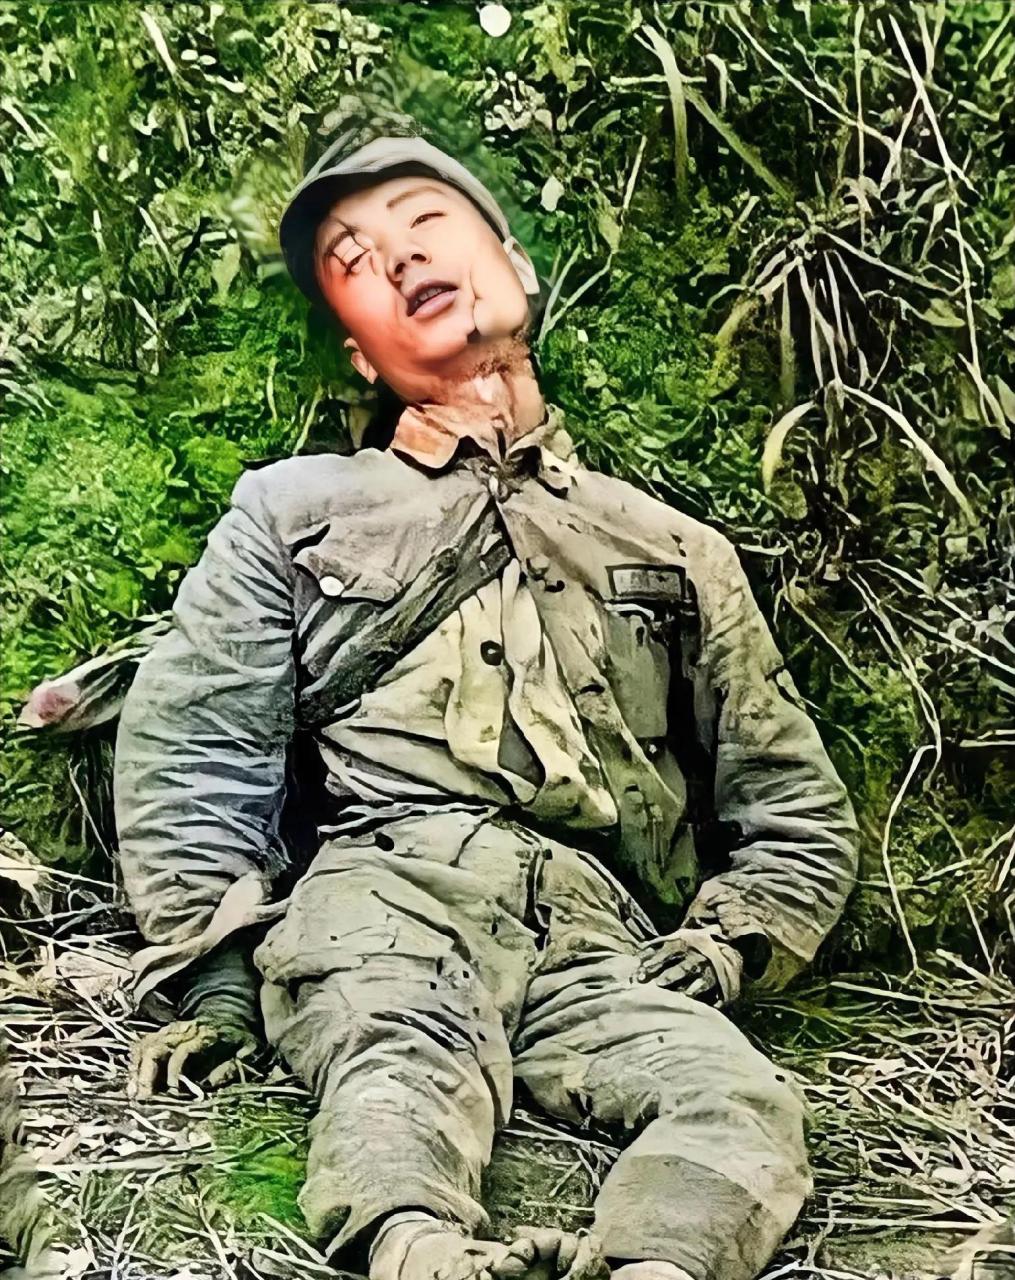 战士照片,他一个人静静地半躺在地上,脸上还有血迹,看着让人心酸不已